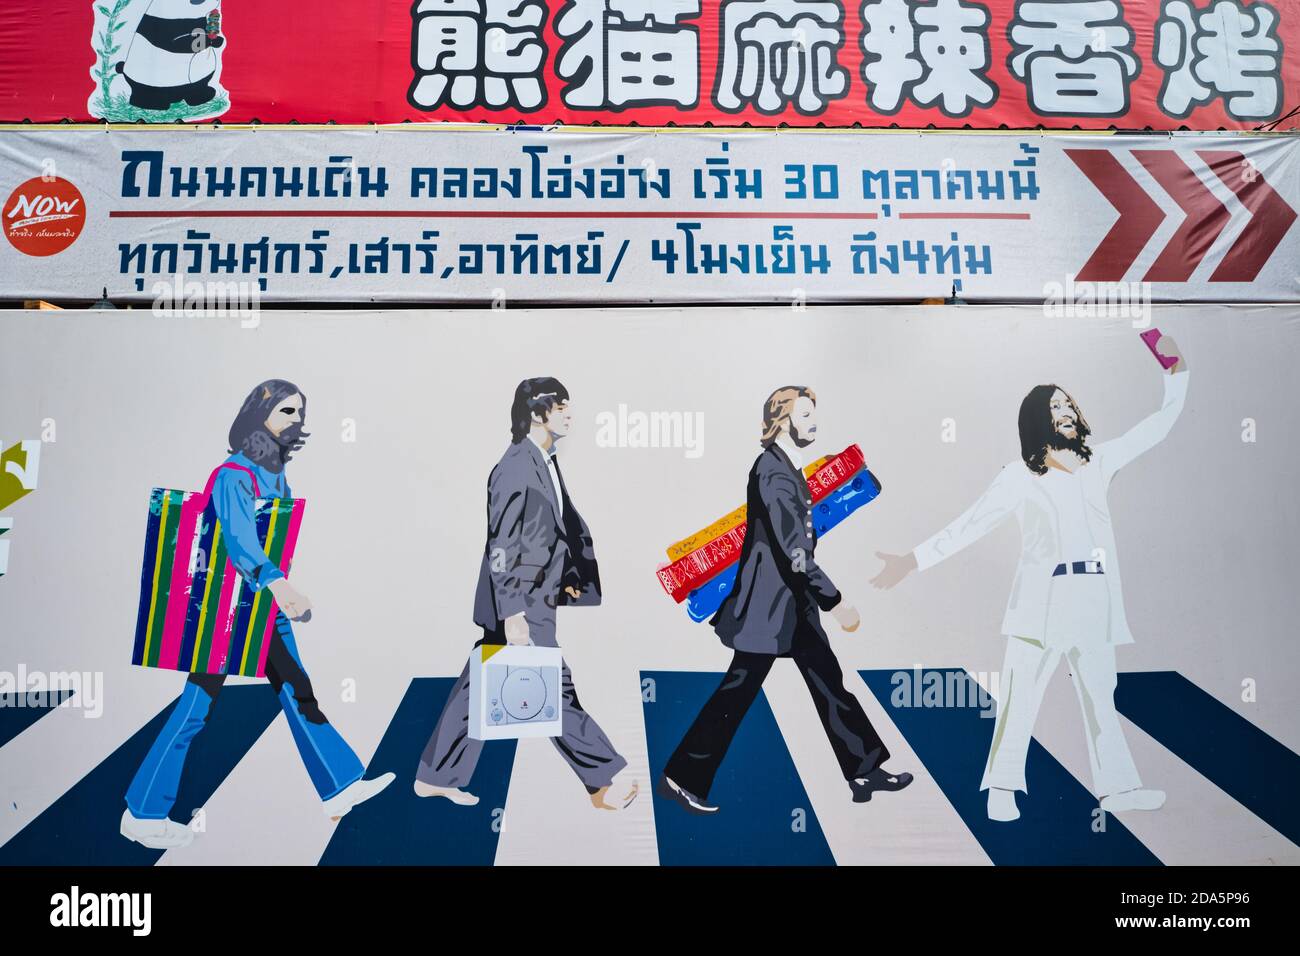 Une fresque près de la rue Ong Ang Walking Street, Chinatown / Phahunat, Bangkok, Thaïlande, basée sur la couverture emblématique de l'album Abbey Road des Beatles Banque D'Images